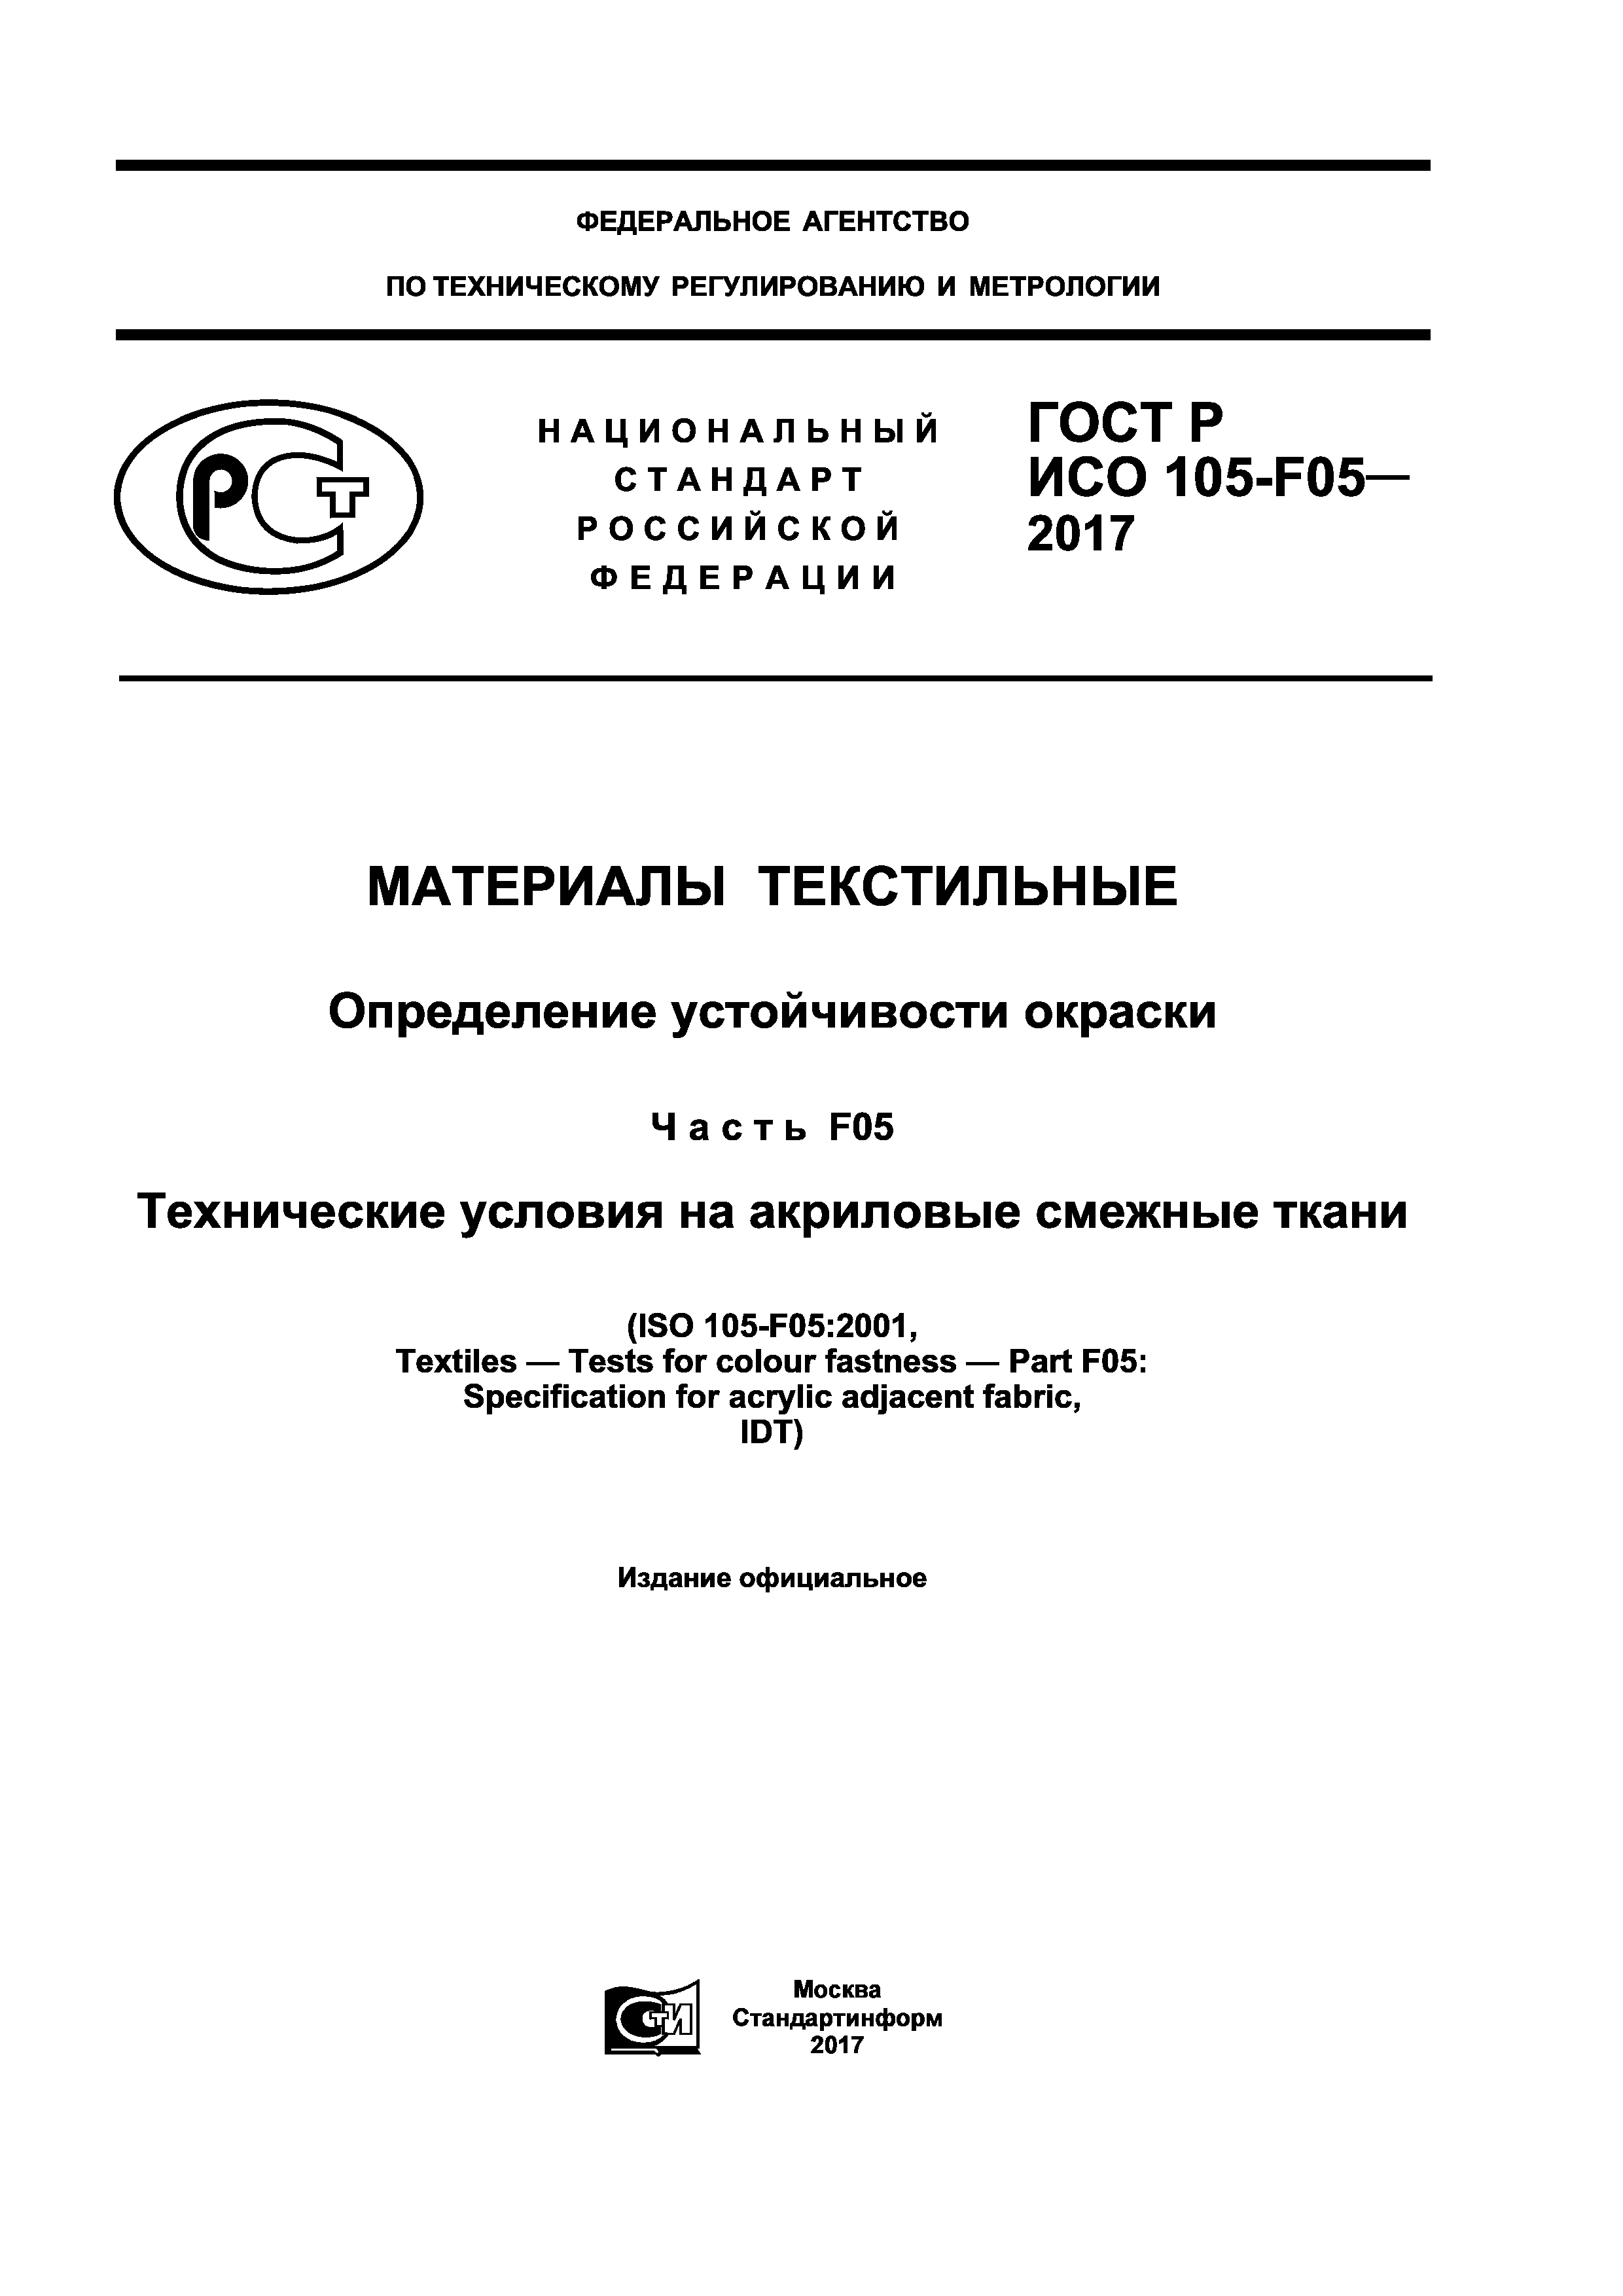 ГОСТ Р ИСО 105-F05-2017